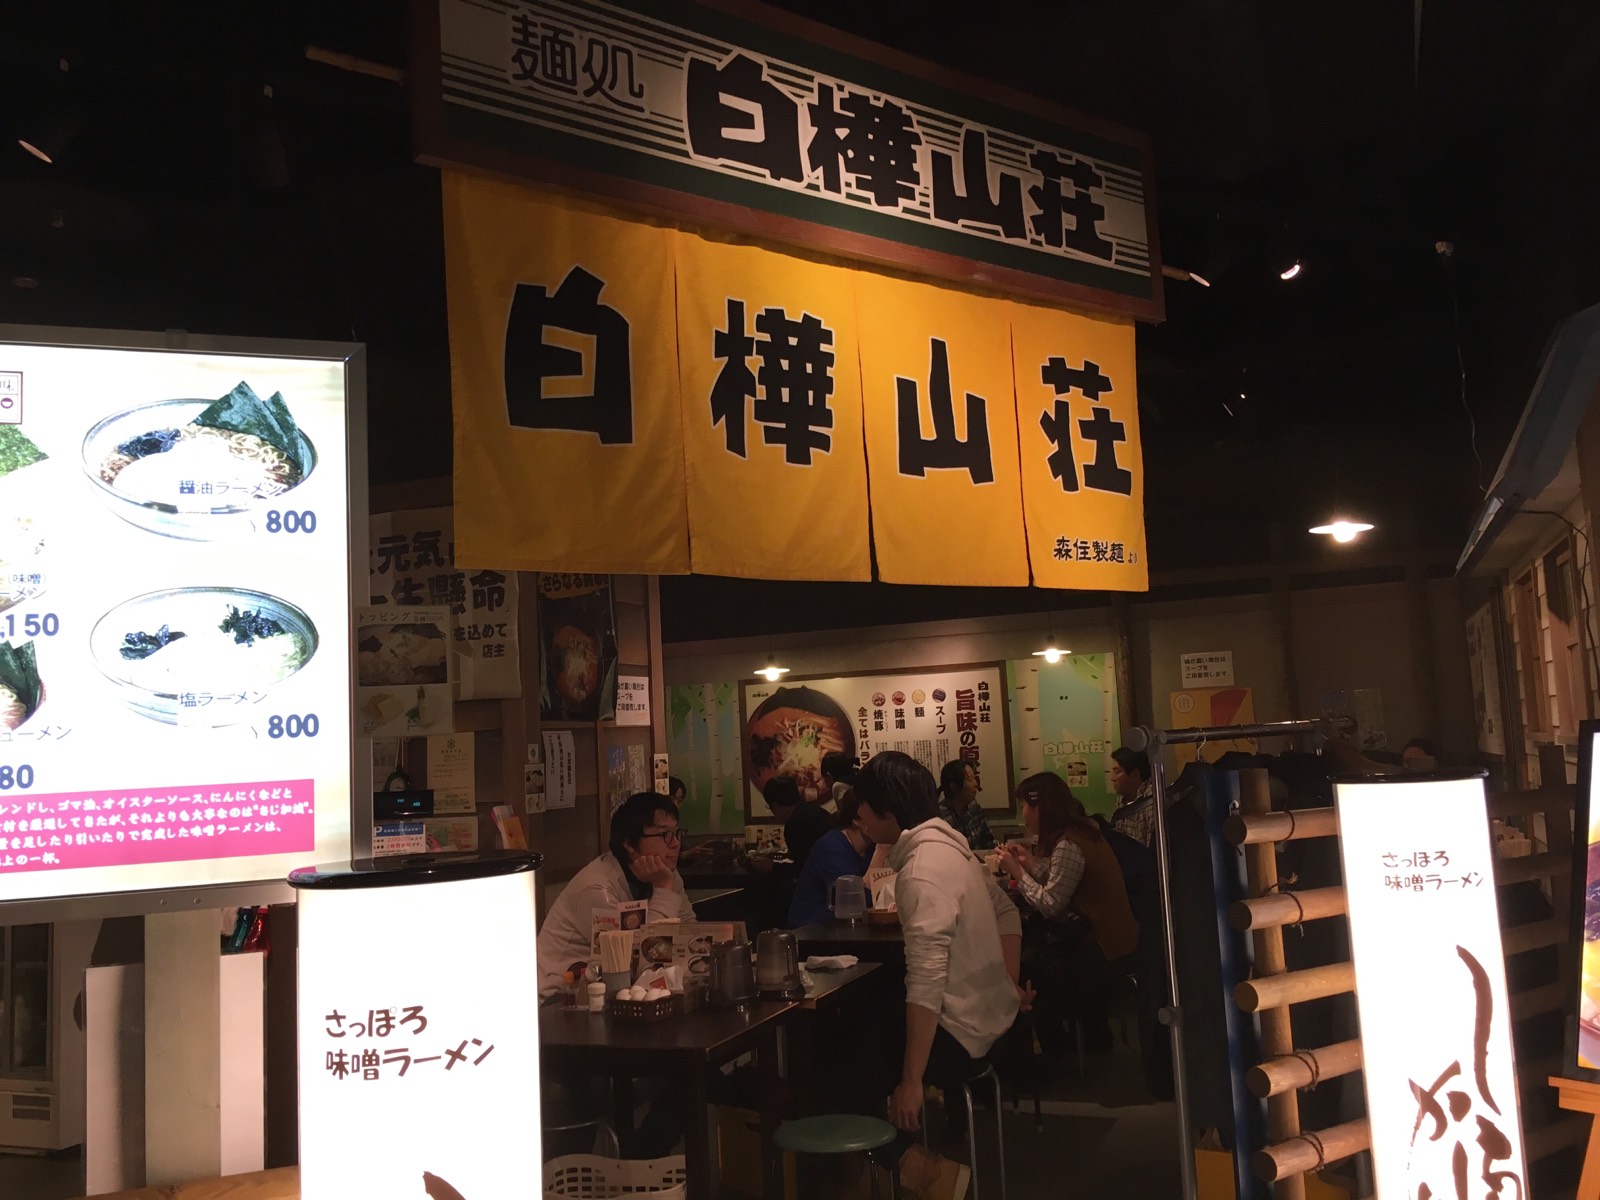 日本第一餐，当然要吃拉面啦！地方很好找，就在JR札幌站外面，出来就可以